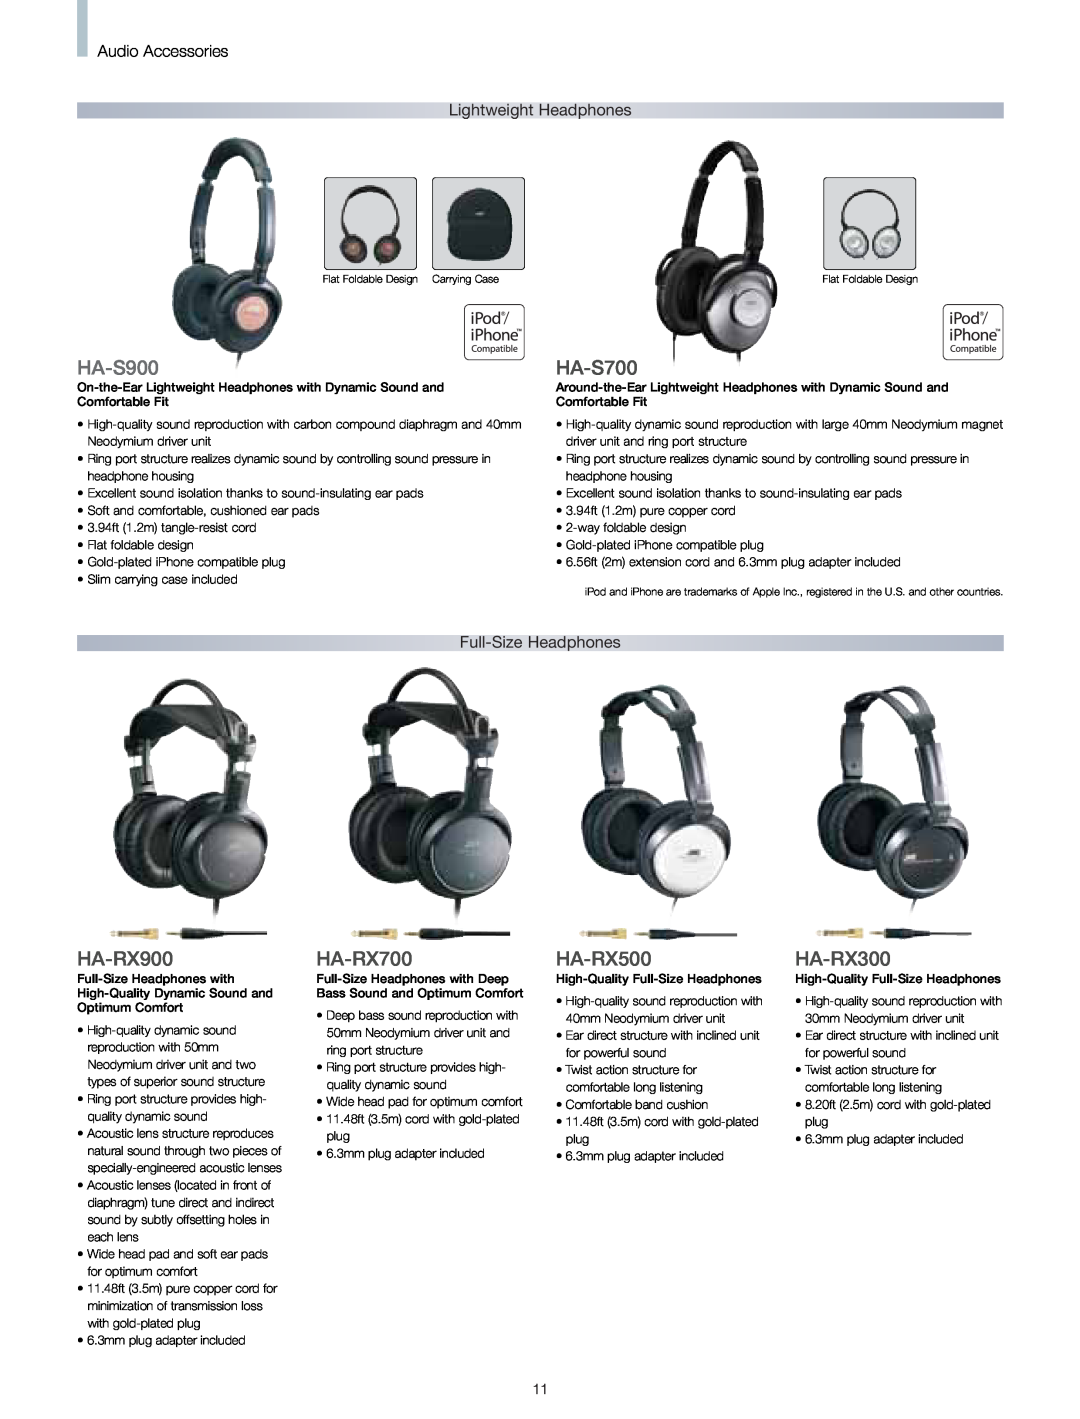 JVC HARX300 manual HA-S900, HA-S700, HA-RX900, HA-RX700, HA-RX500, HA-RX300, Audio Accessories, Lightweight Headphones 